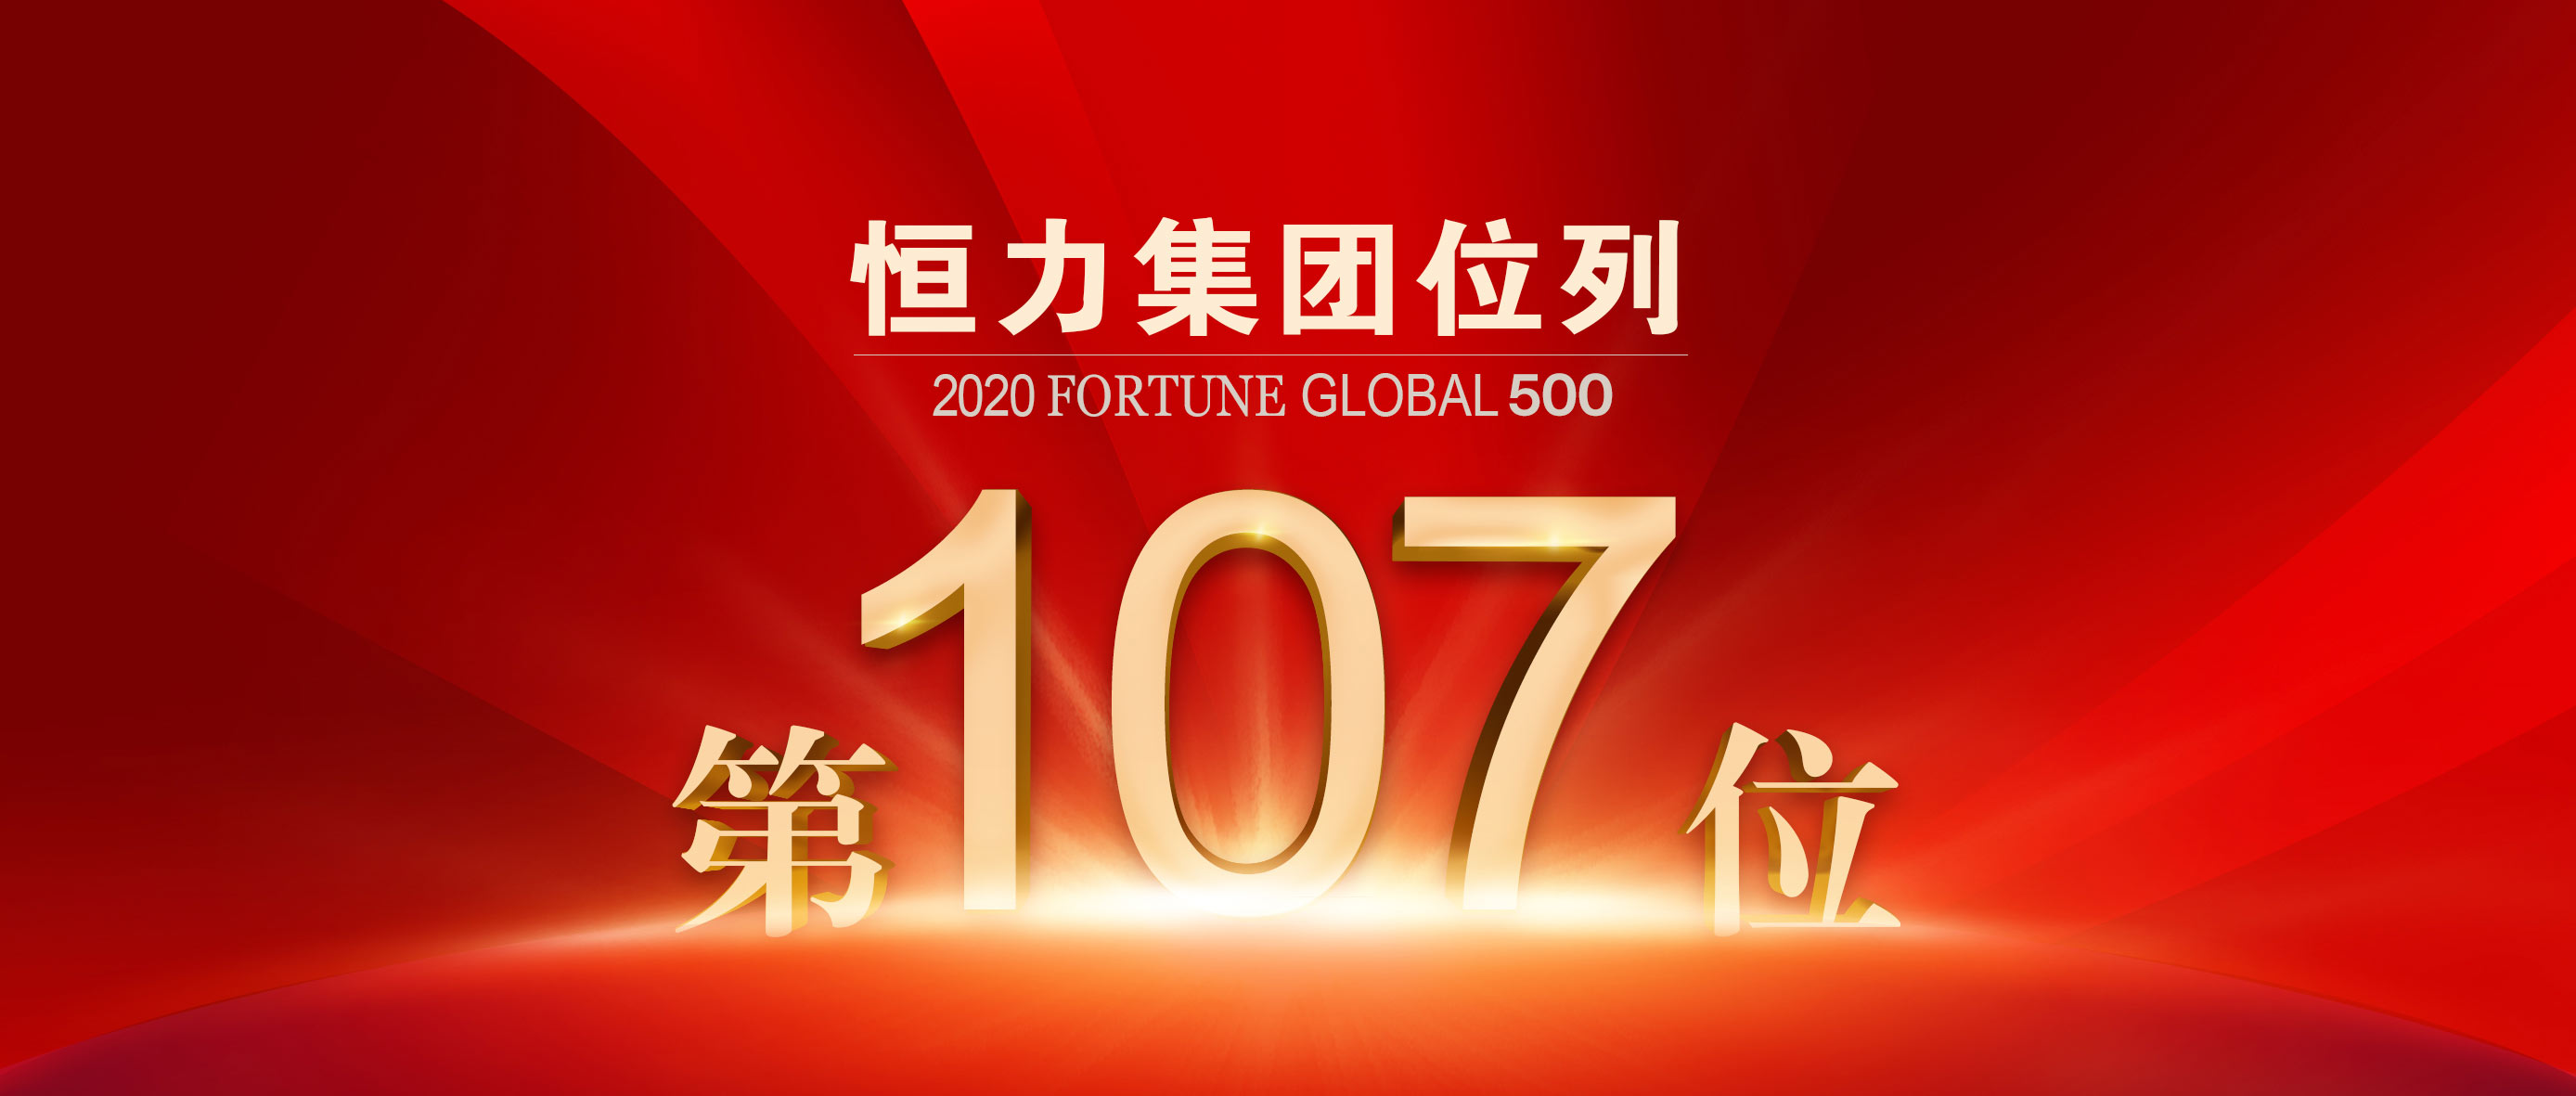 恒力集团跃升至《财富》世界五百强第107位